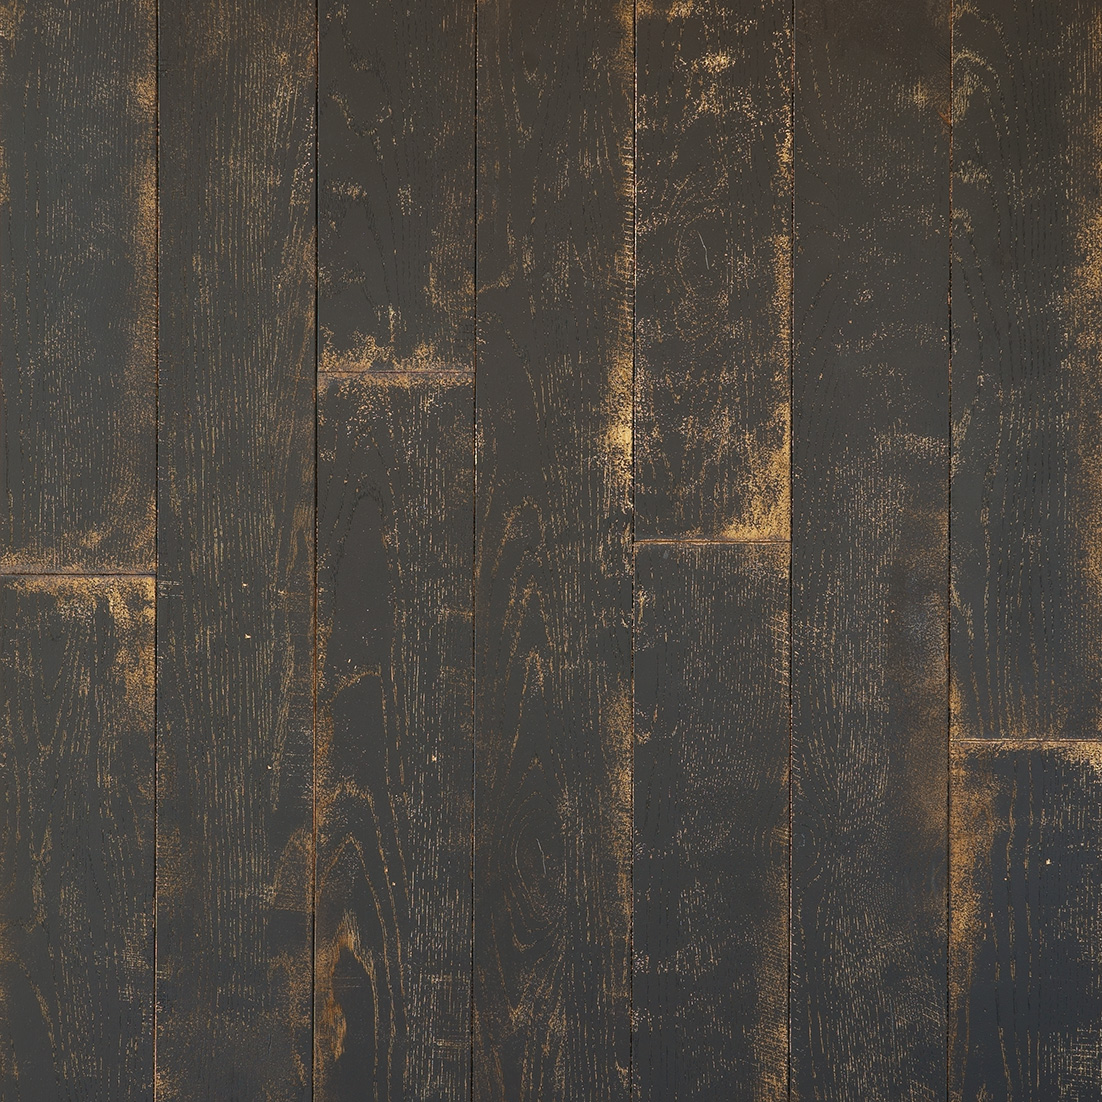 黒木目、内装用突板/ツキ板不燃化粧パネル・ウッドパネルは天井材壁材として、木の壁や天井を容易に作れる木製パネル（不燃木材）です。古材の羽目板貼りなどおしゃれな木目の壁や天井を作る事が可能です。